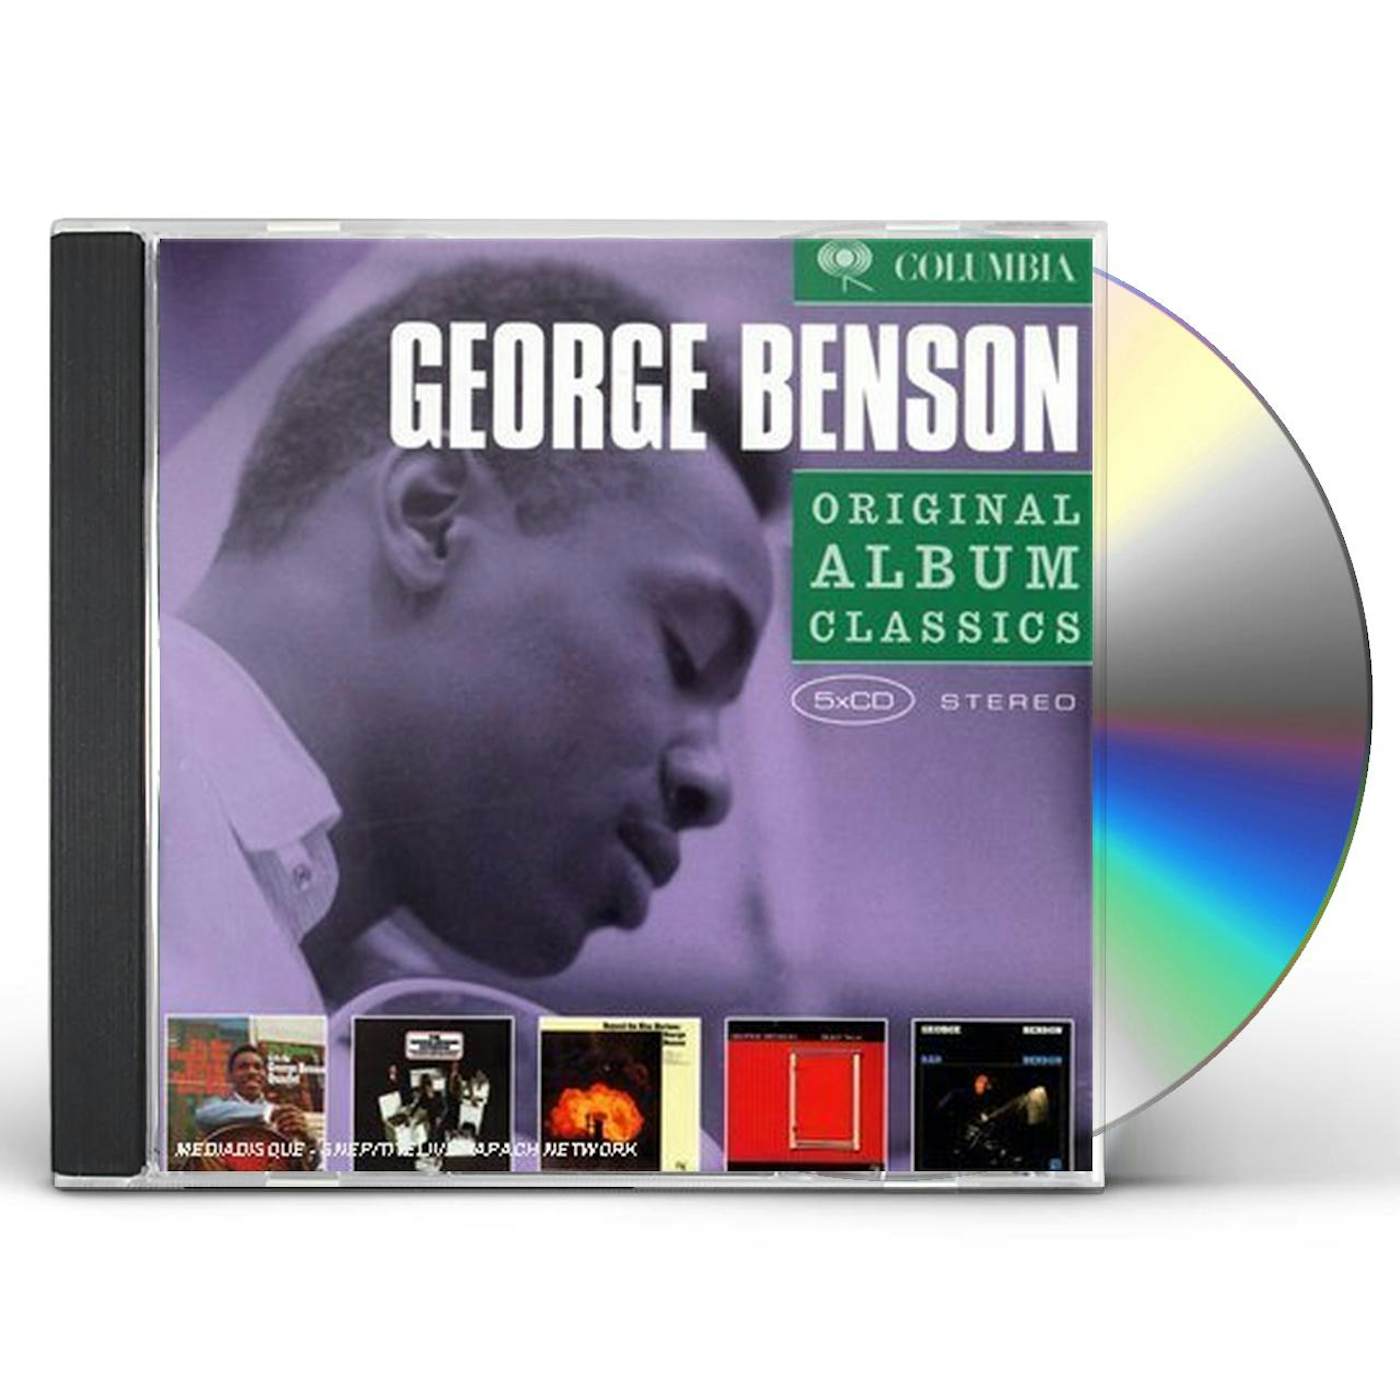 George Benson ORIGINAL ALBUM CLASSICS CD